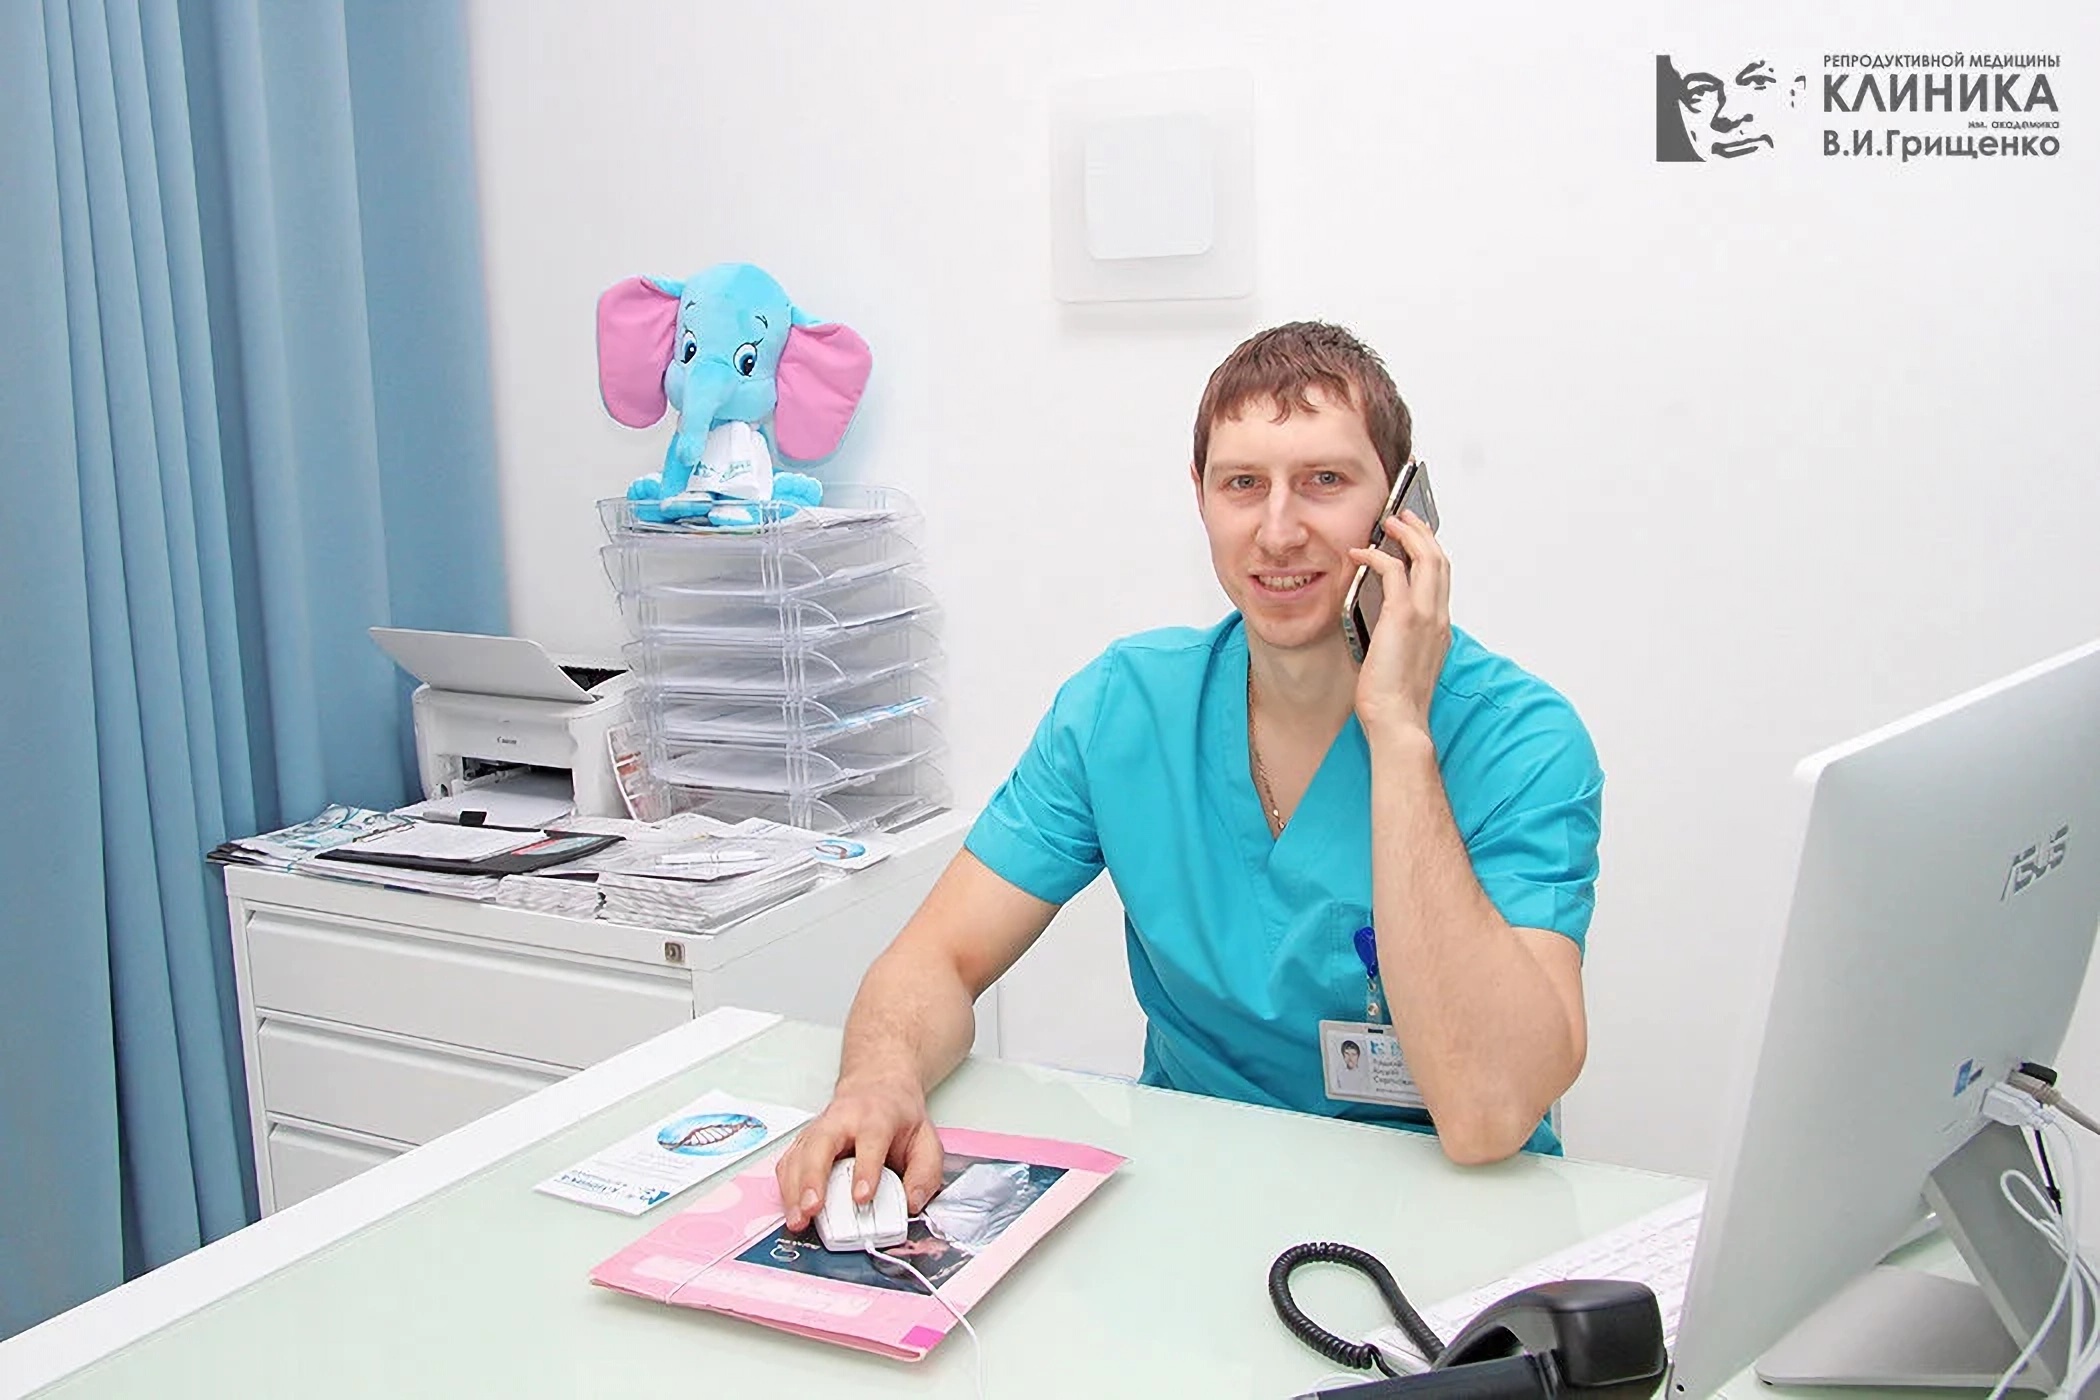 Gynecologist in Gryshchenko Clinic Lviv Ukraine